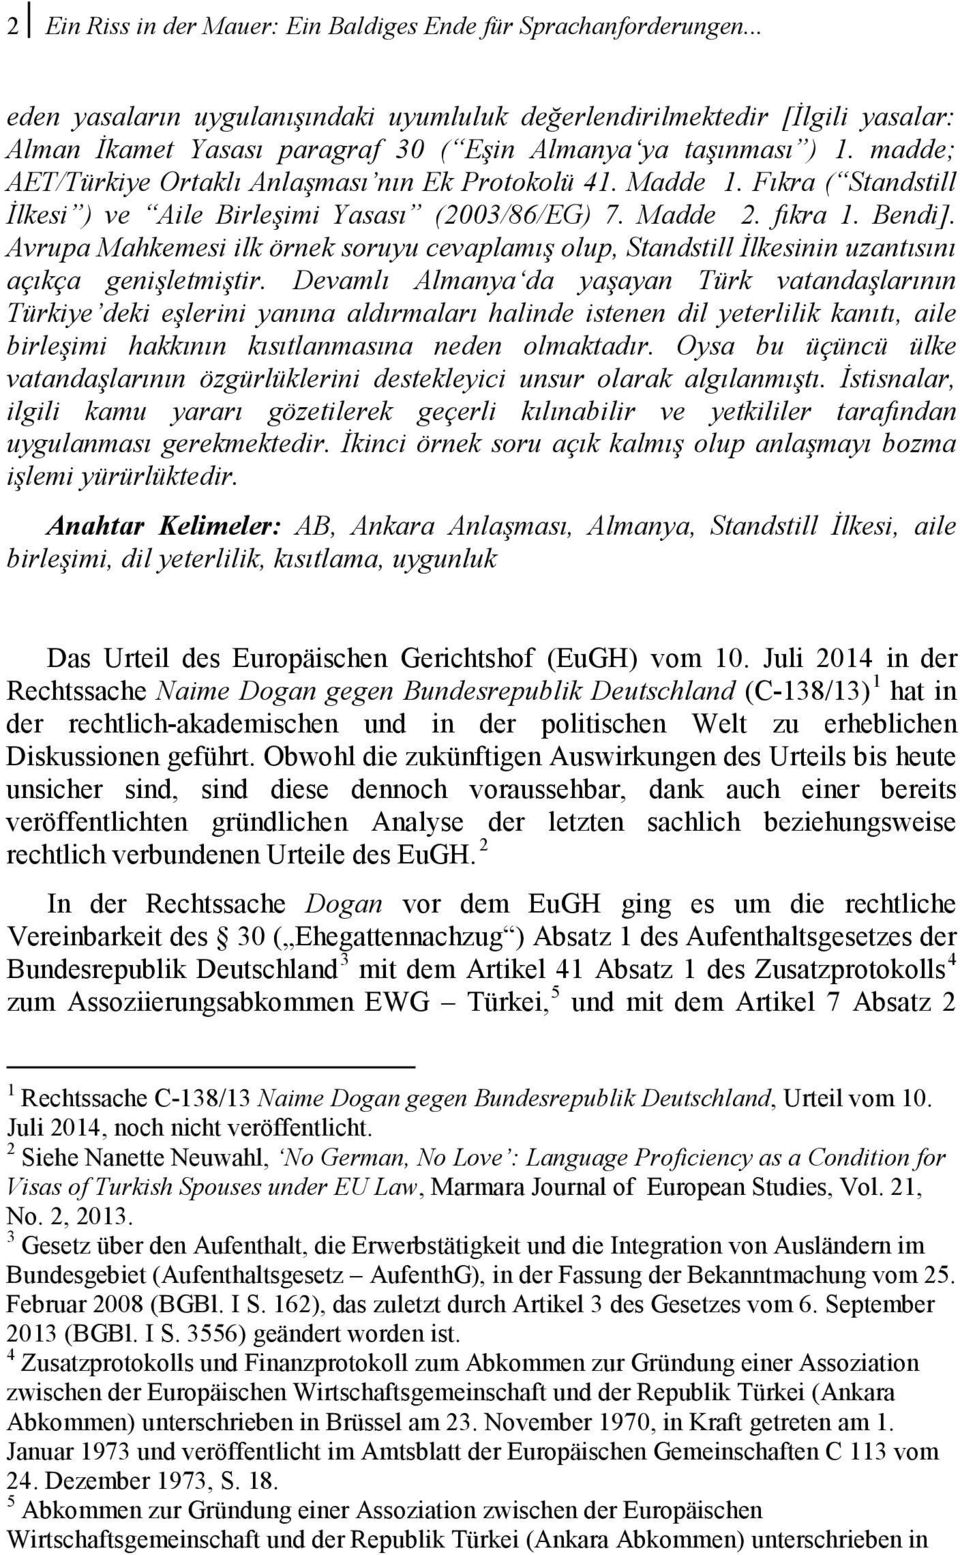 madde; AET/Türkiye Ortaklı Anlaşması nın Ek Protokolü 41. Madde 1. Fıkra ( Standstill İlkesi ) ve Aile Birleşimi Yasası (2003/86/EG) 7. Madde 2. fıkra 1. Bendi].